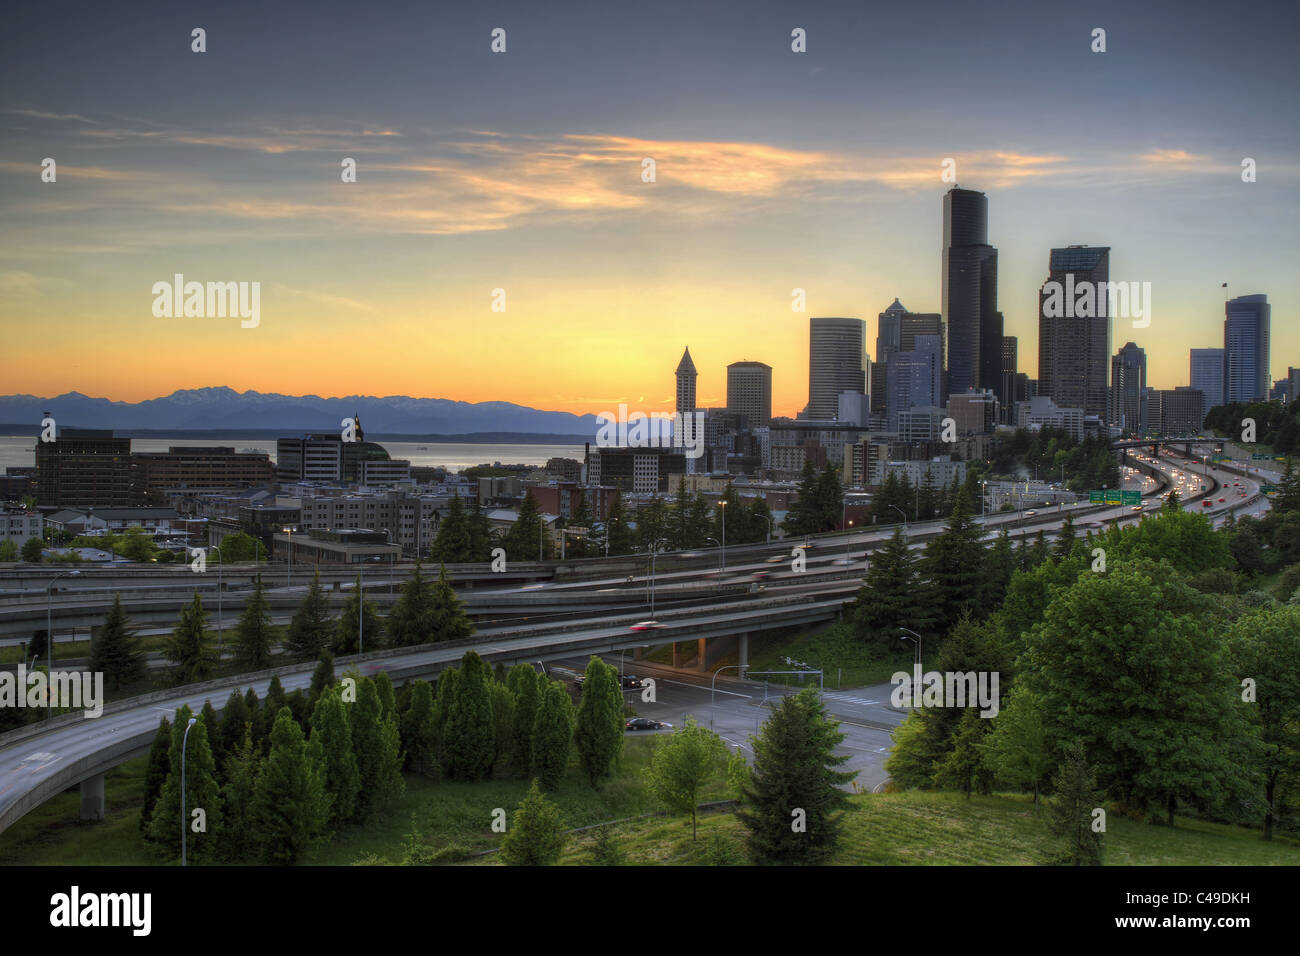 Seattle Washington Skyline and Freeway at Sunset Stock Photo